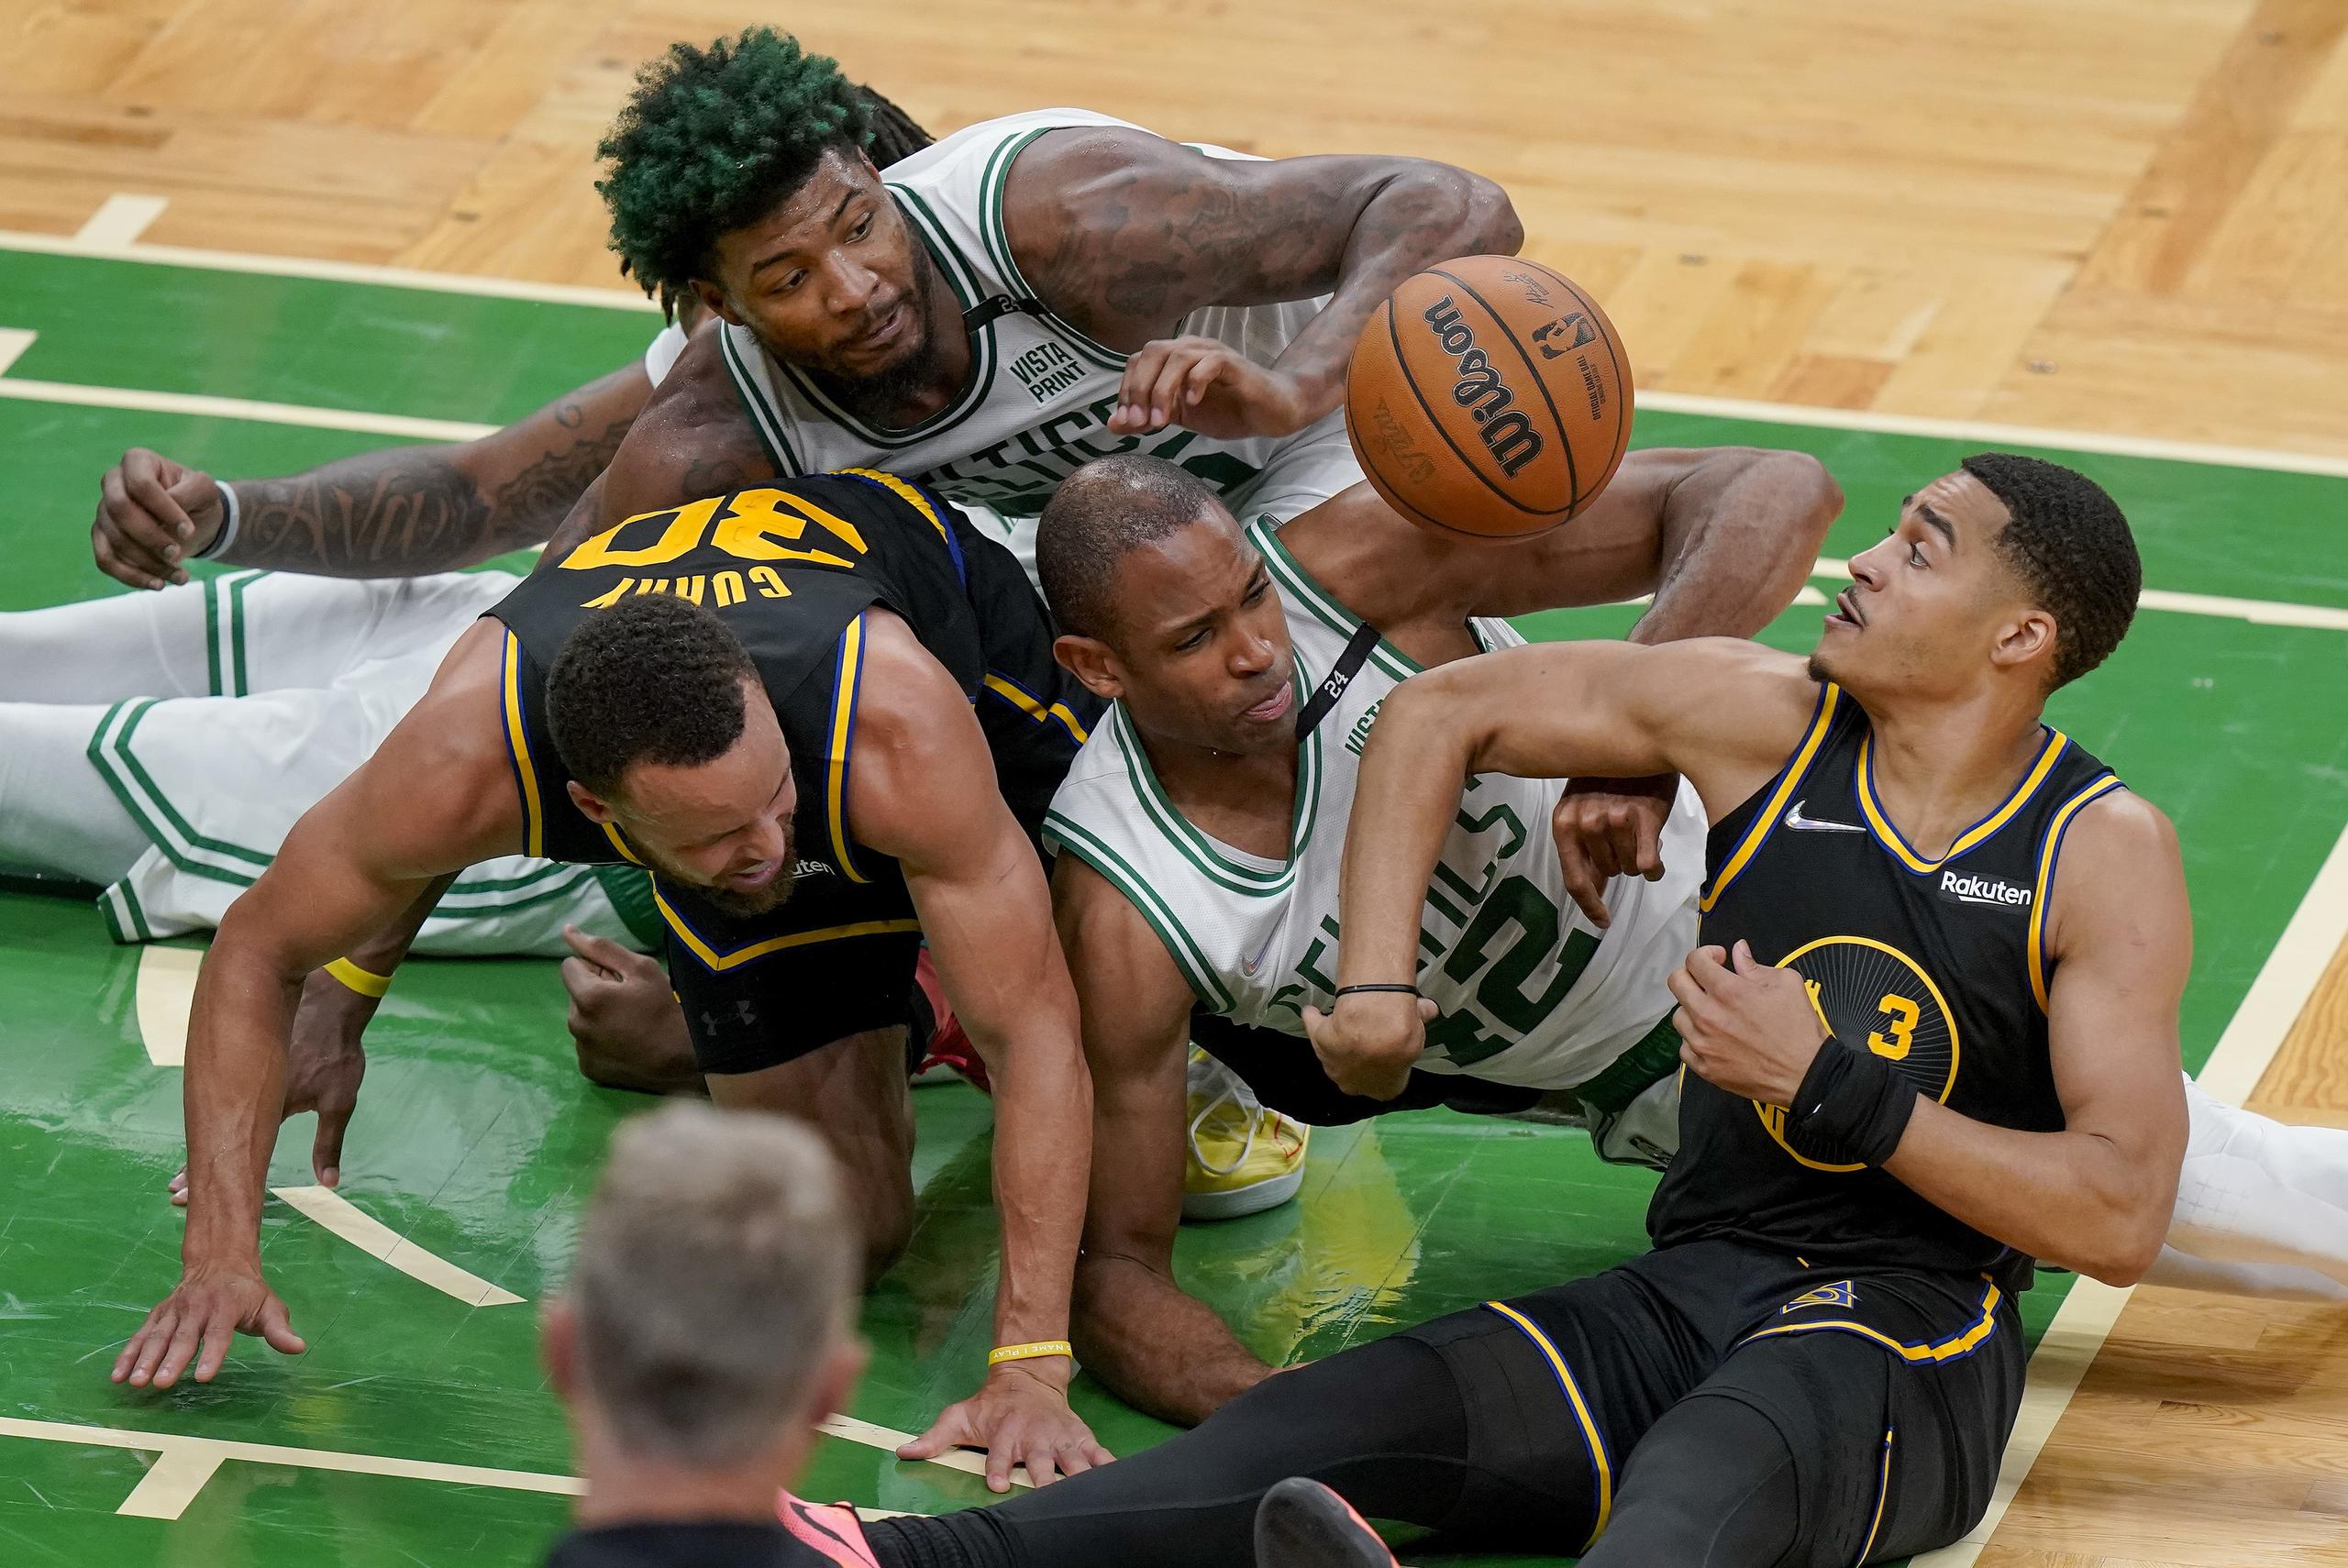 La pierna de Stephen Curry (30) quedó pillada por el cuerpo de Al Horford, de los Celtics, en la lucha por un balón perdido.